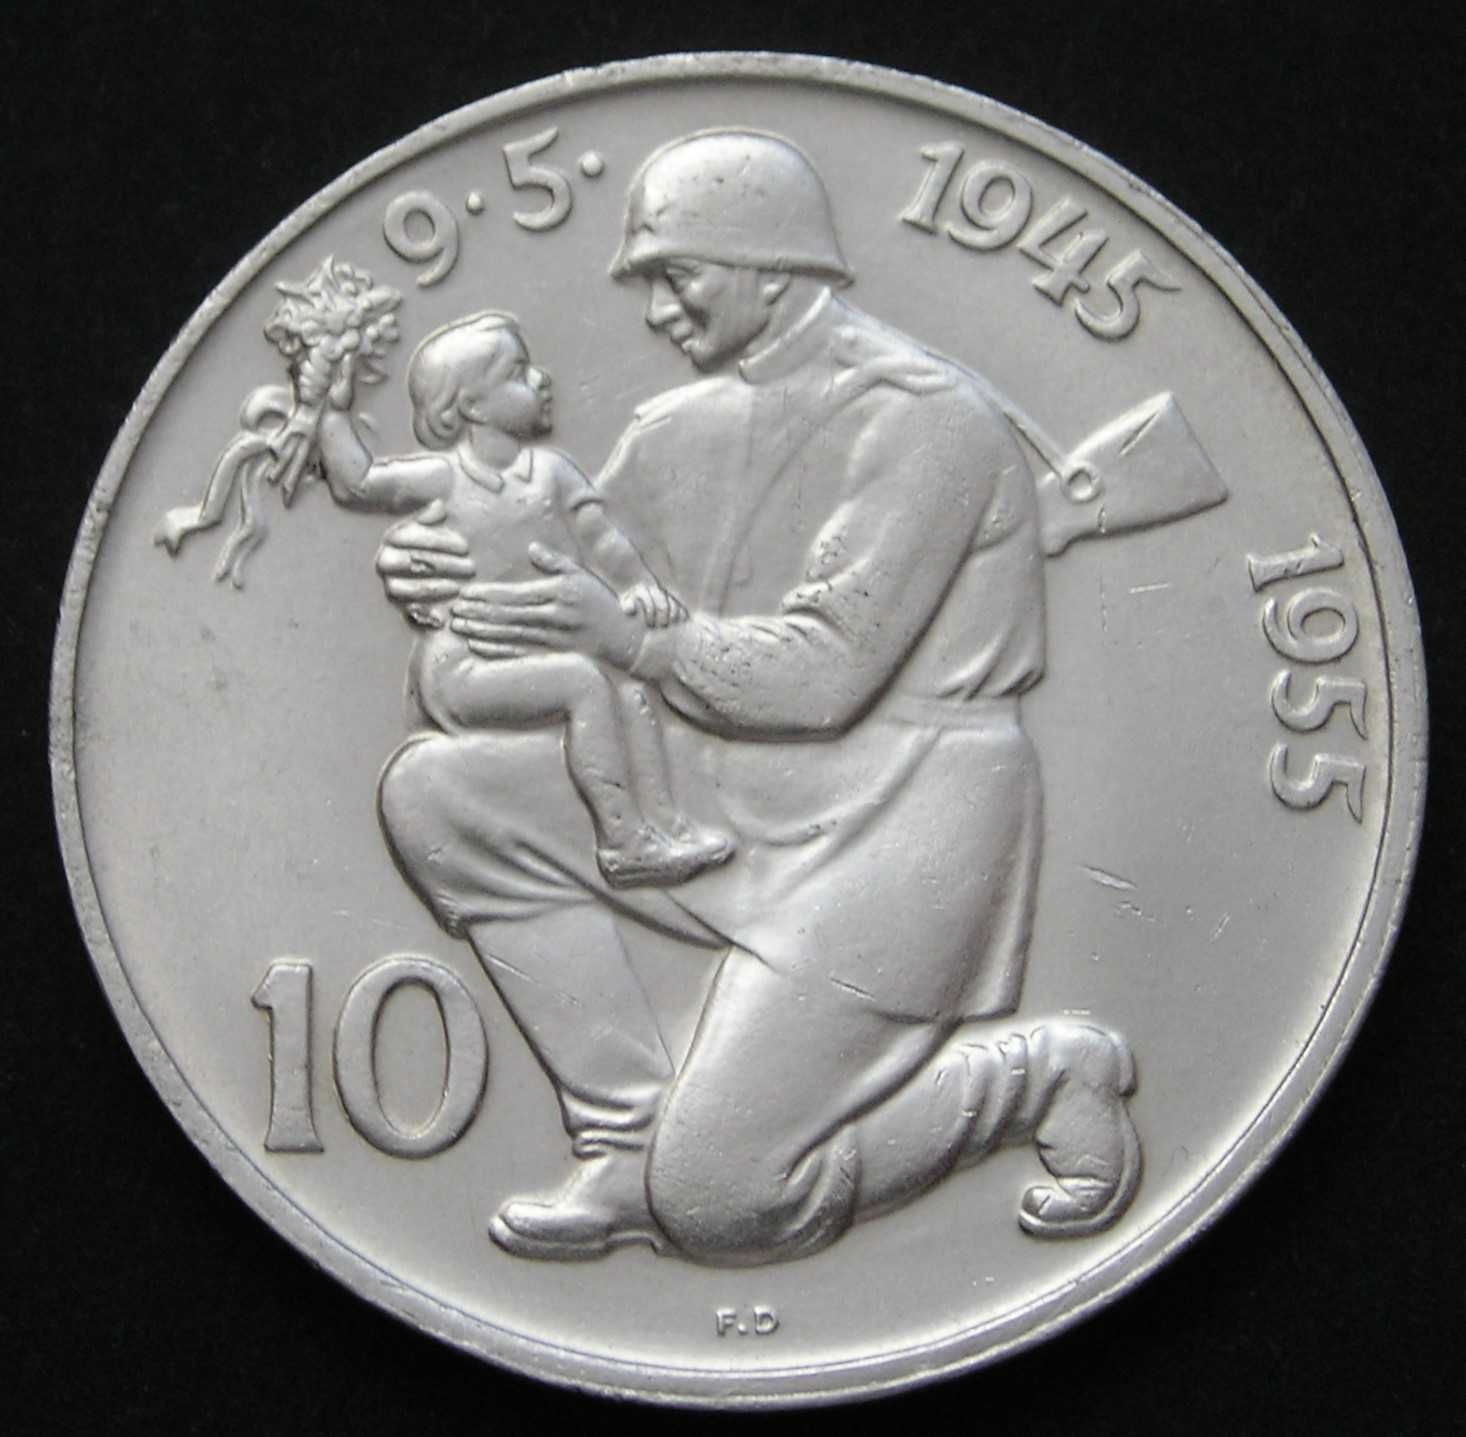 Czechosłowacja 10 koron 1955 - rocznica wyzwolenia - srebro